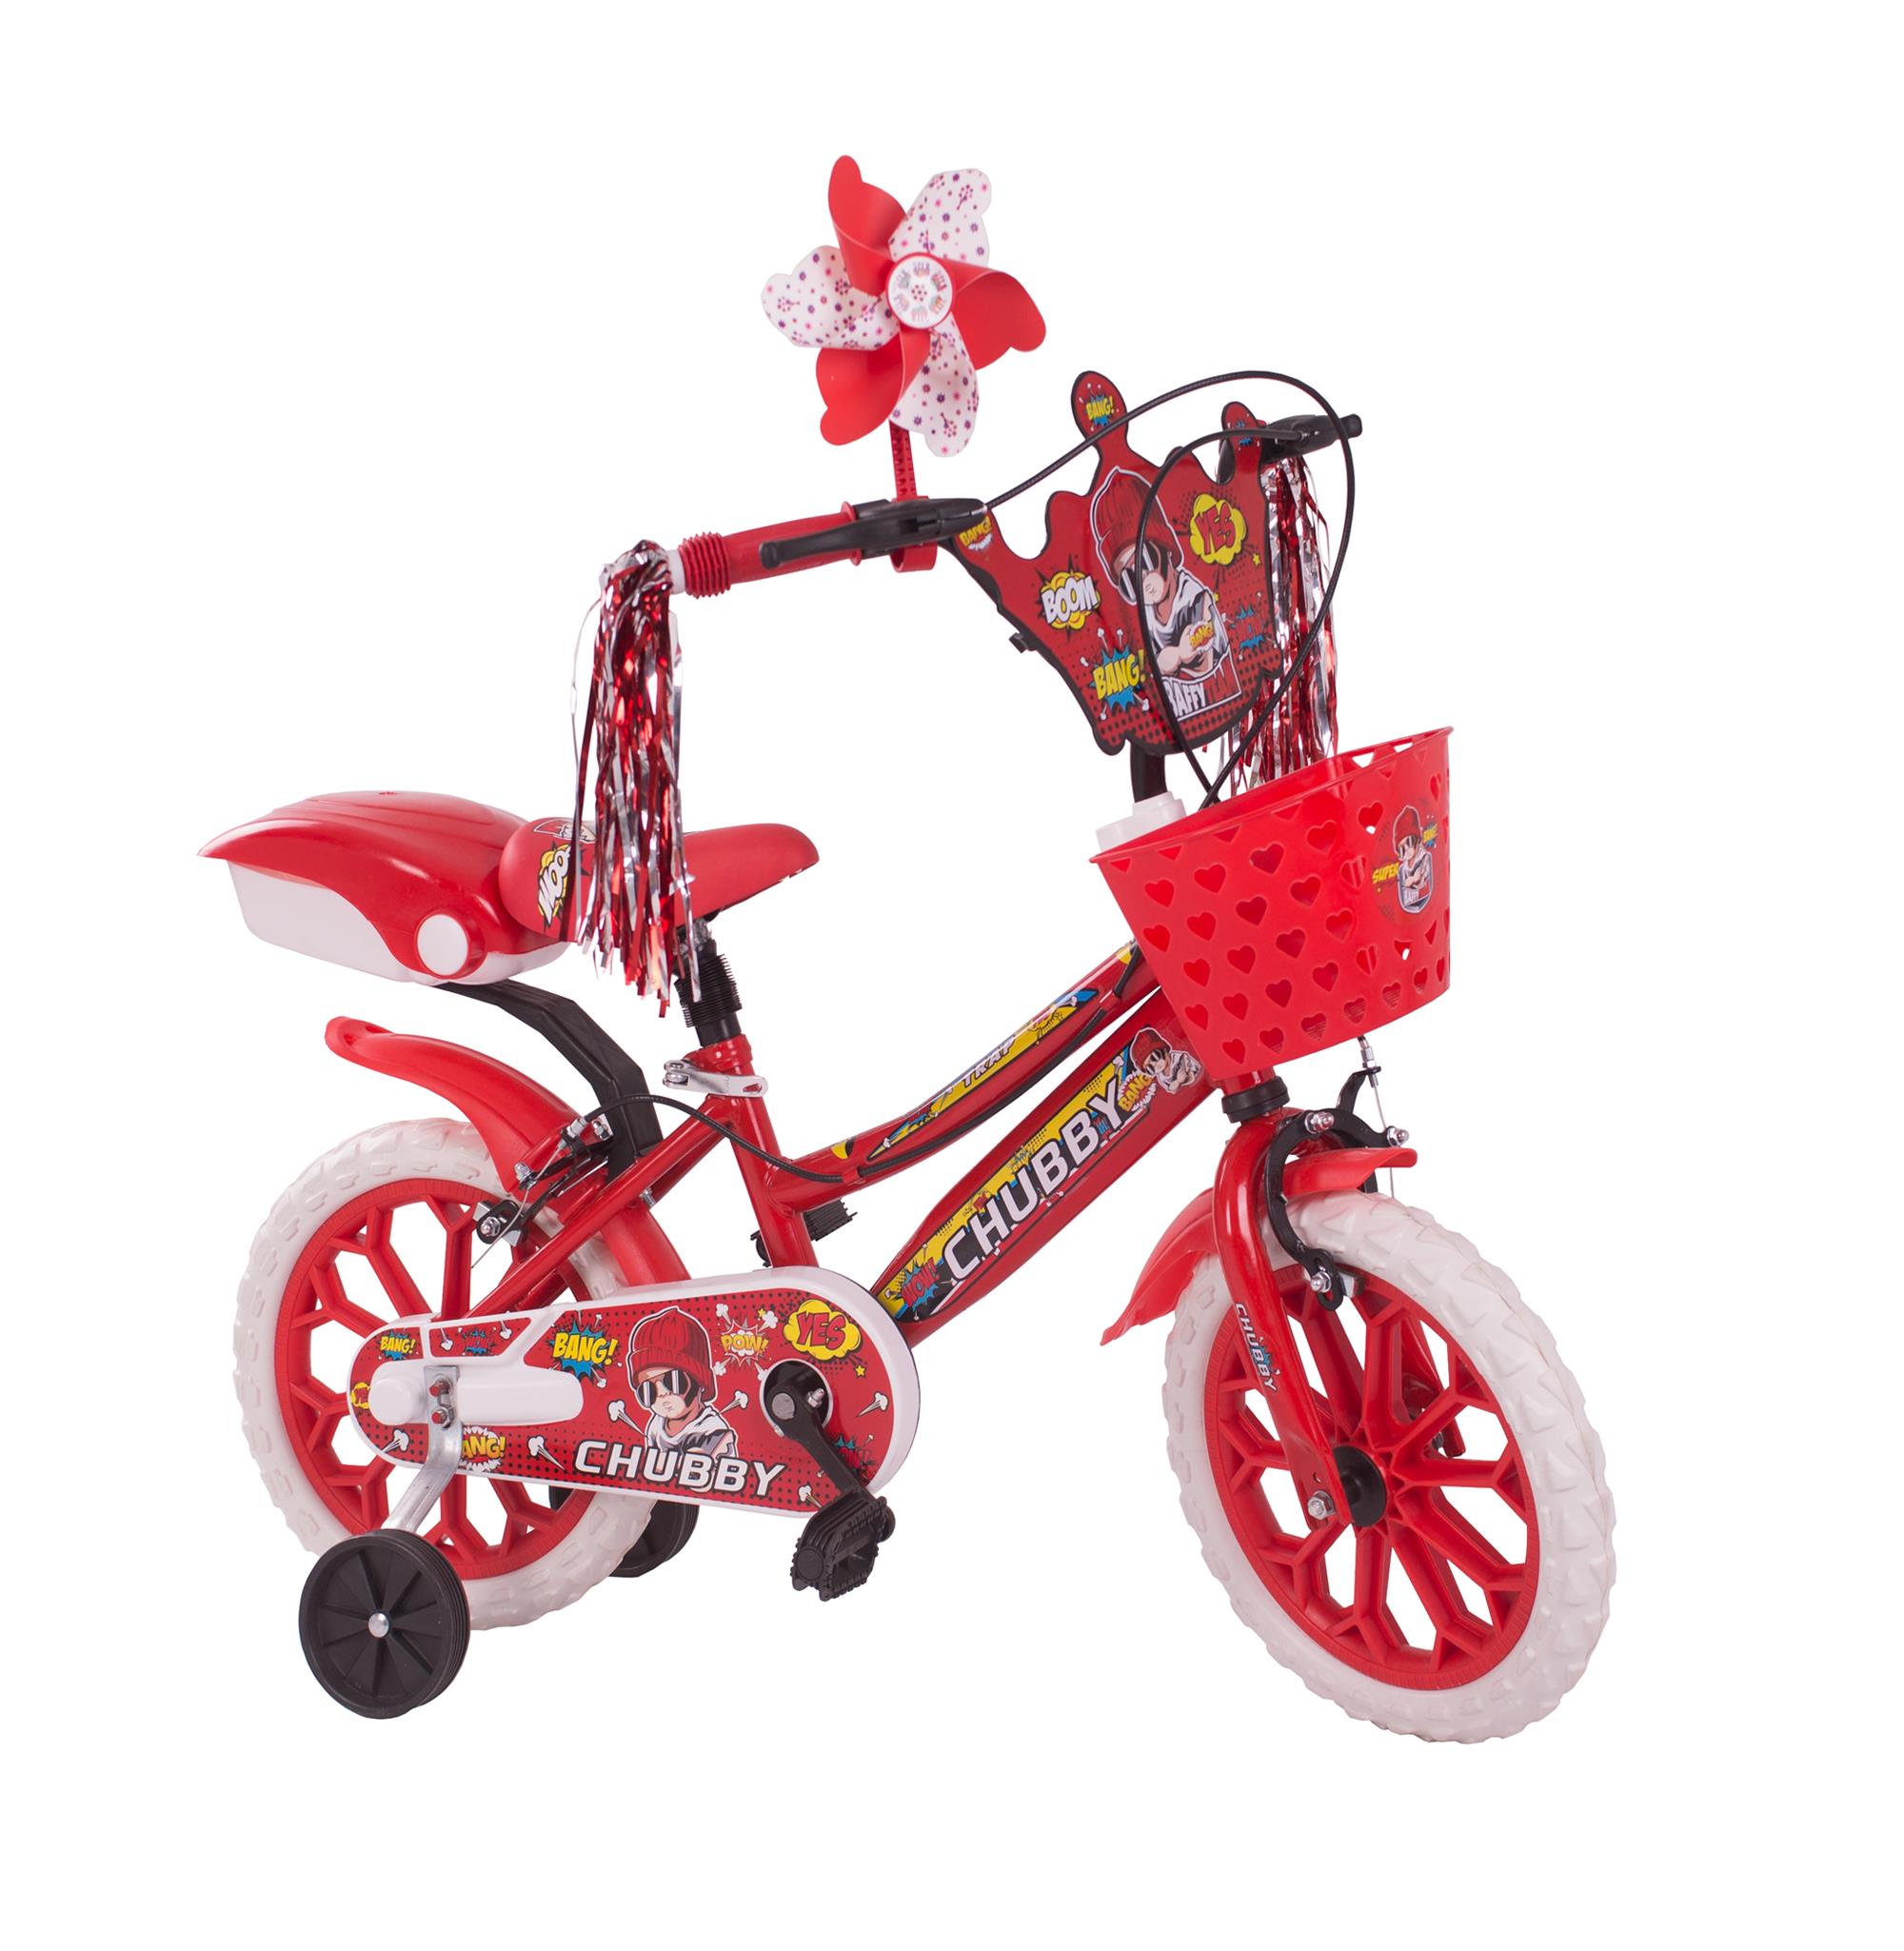 Chubby Baby Çocuk Bisikleti 15 Jant Kırmızı 3-5 Yaş İçin Uygundur